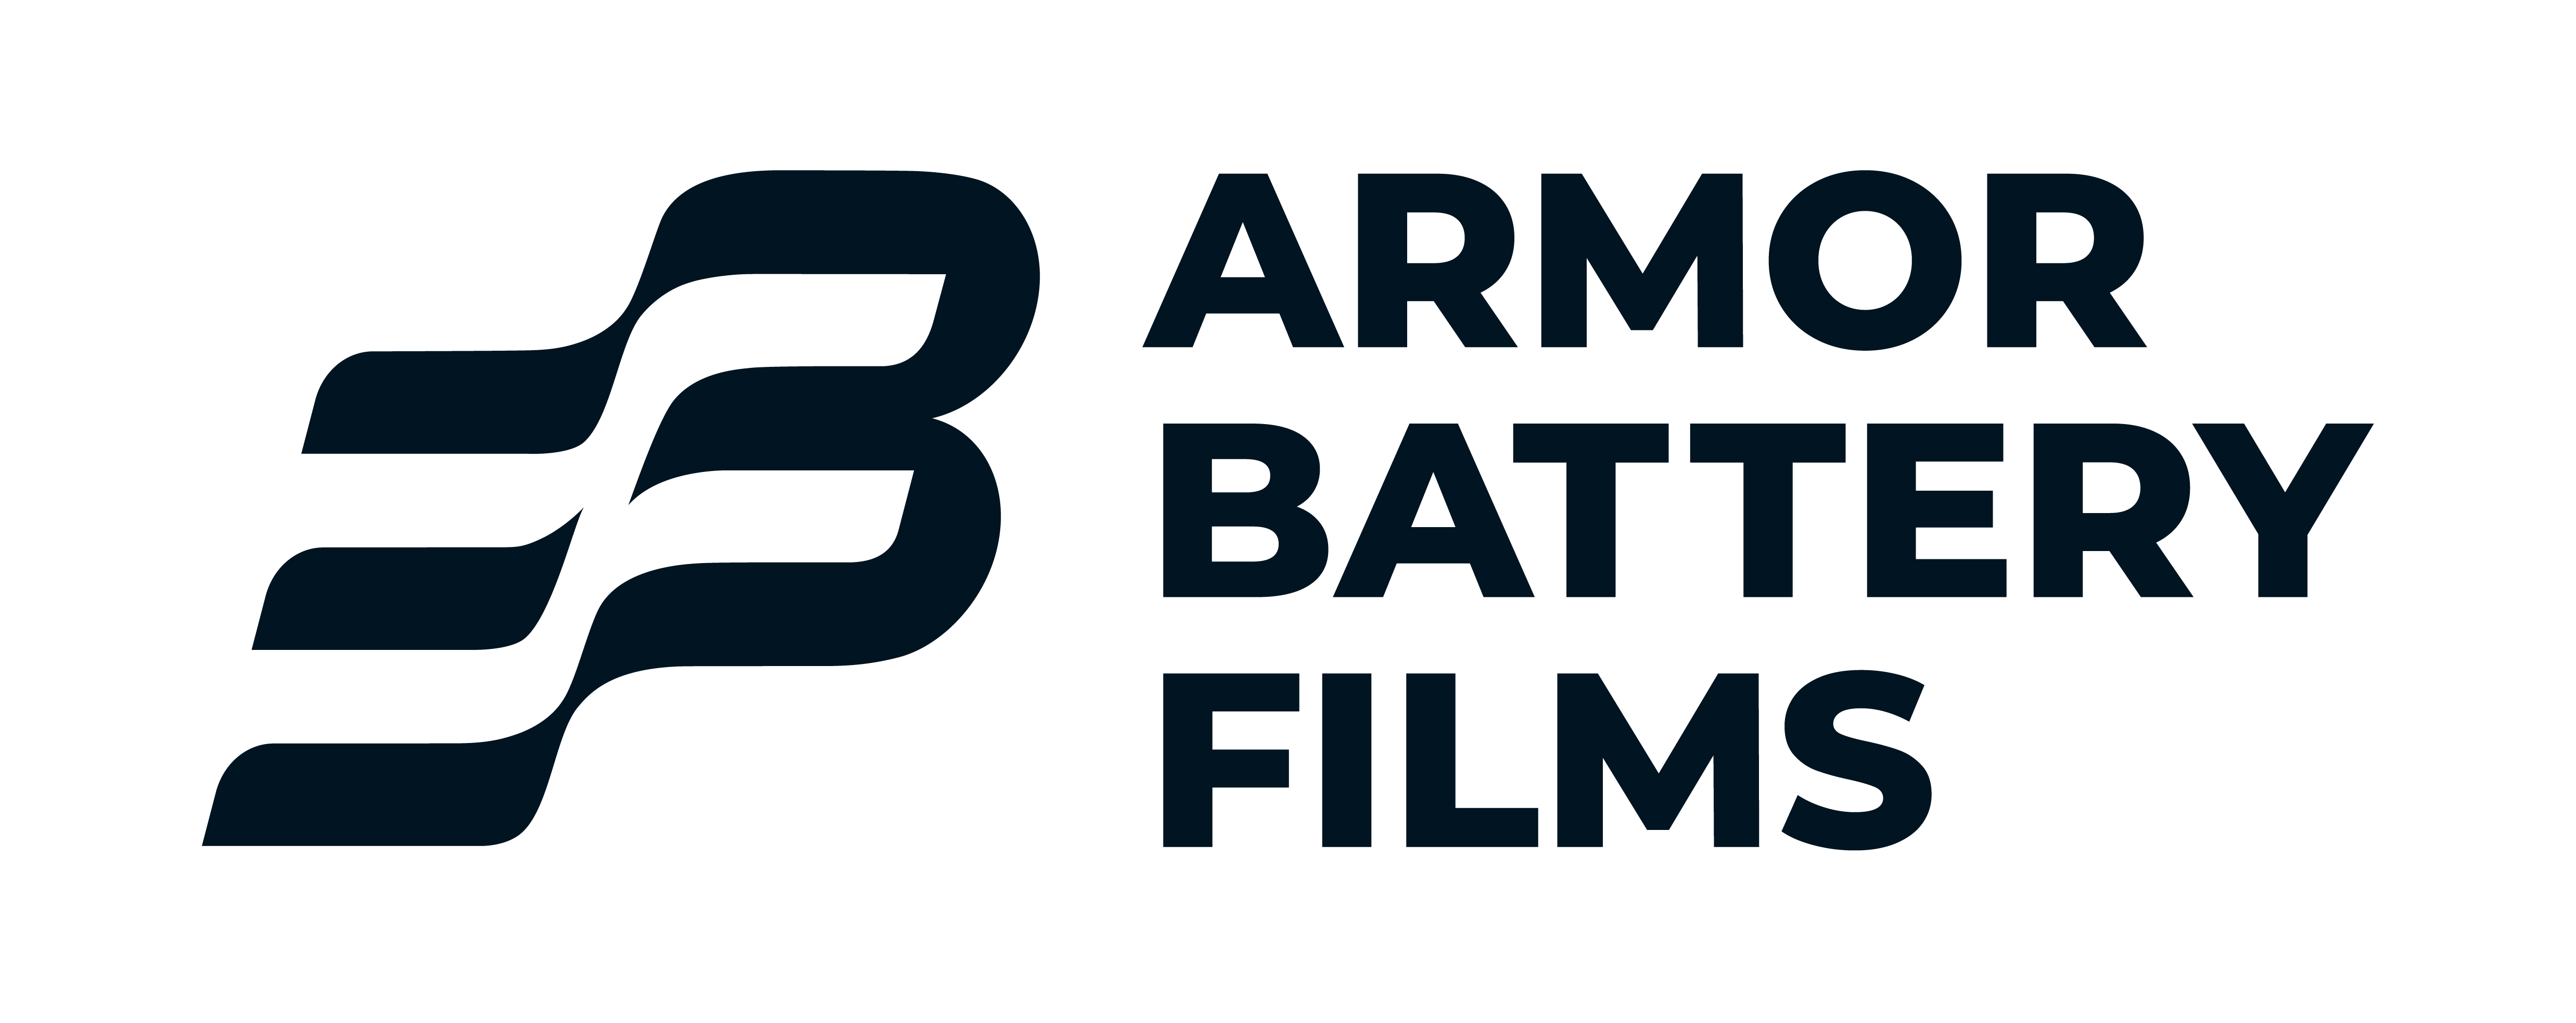 ARMOR BATTERY FILMS